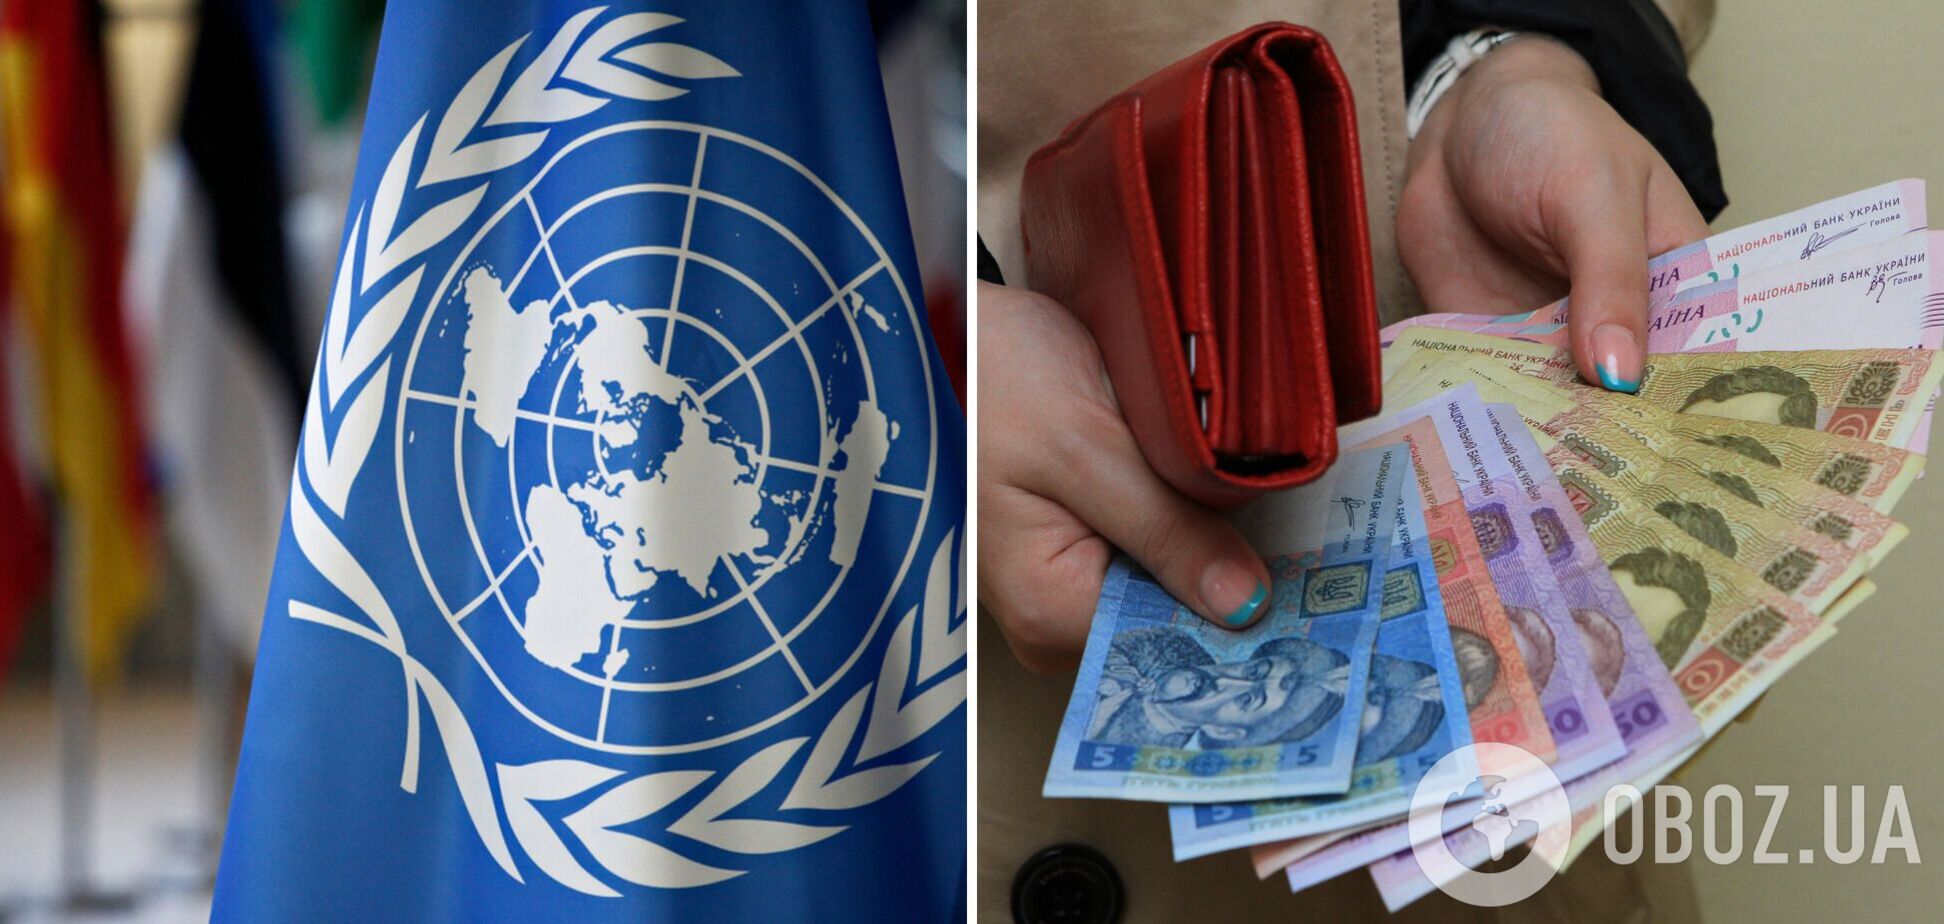 ООН помогает переселенцам деньгами